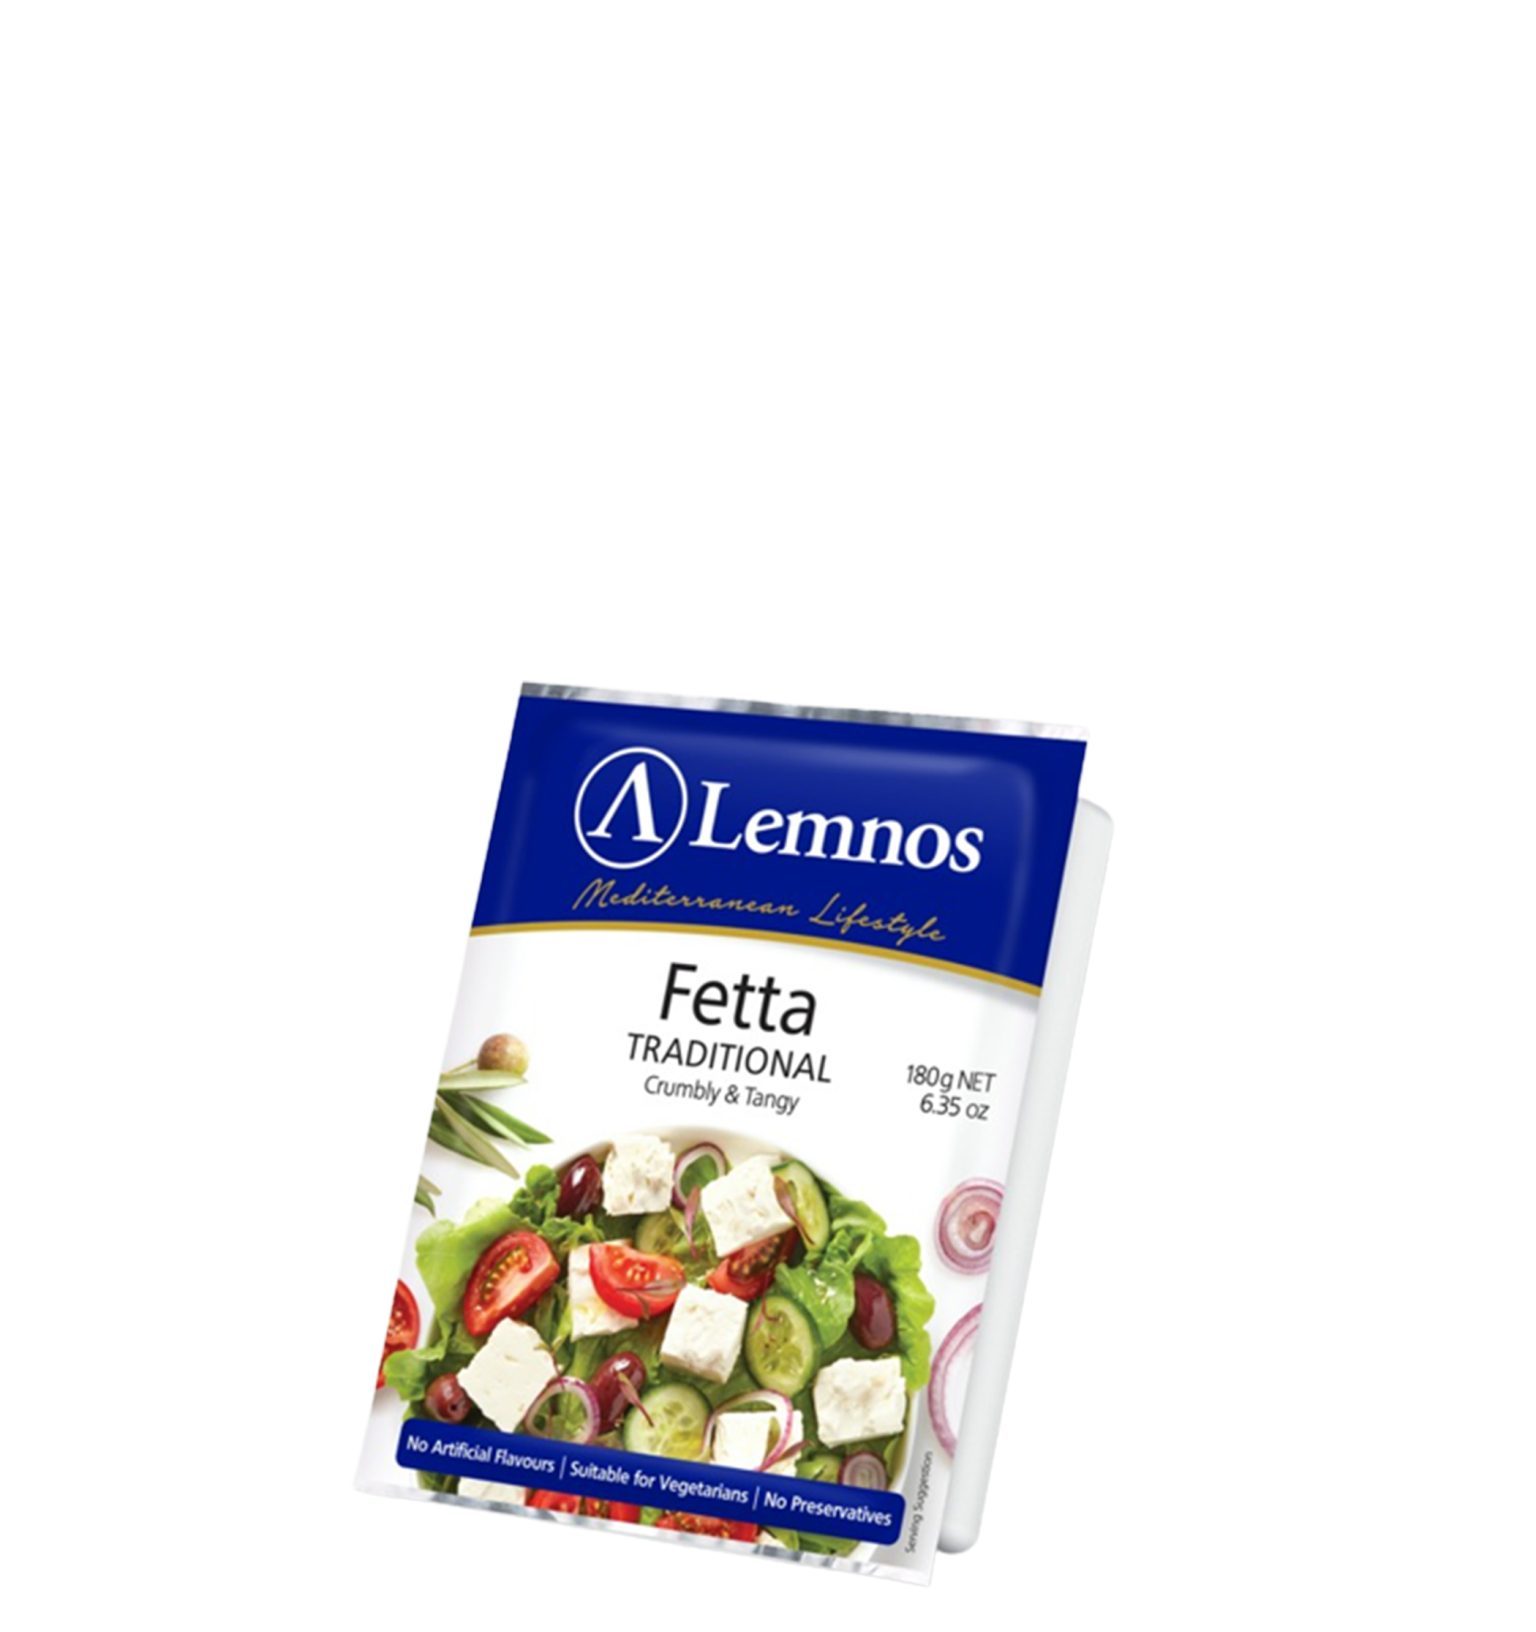 Lemnos Regular Full Cream Fetta 180g-image